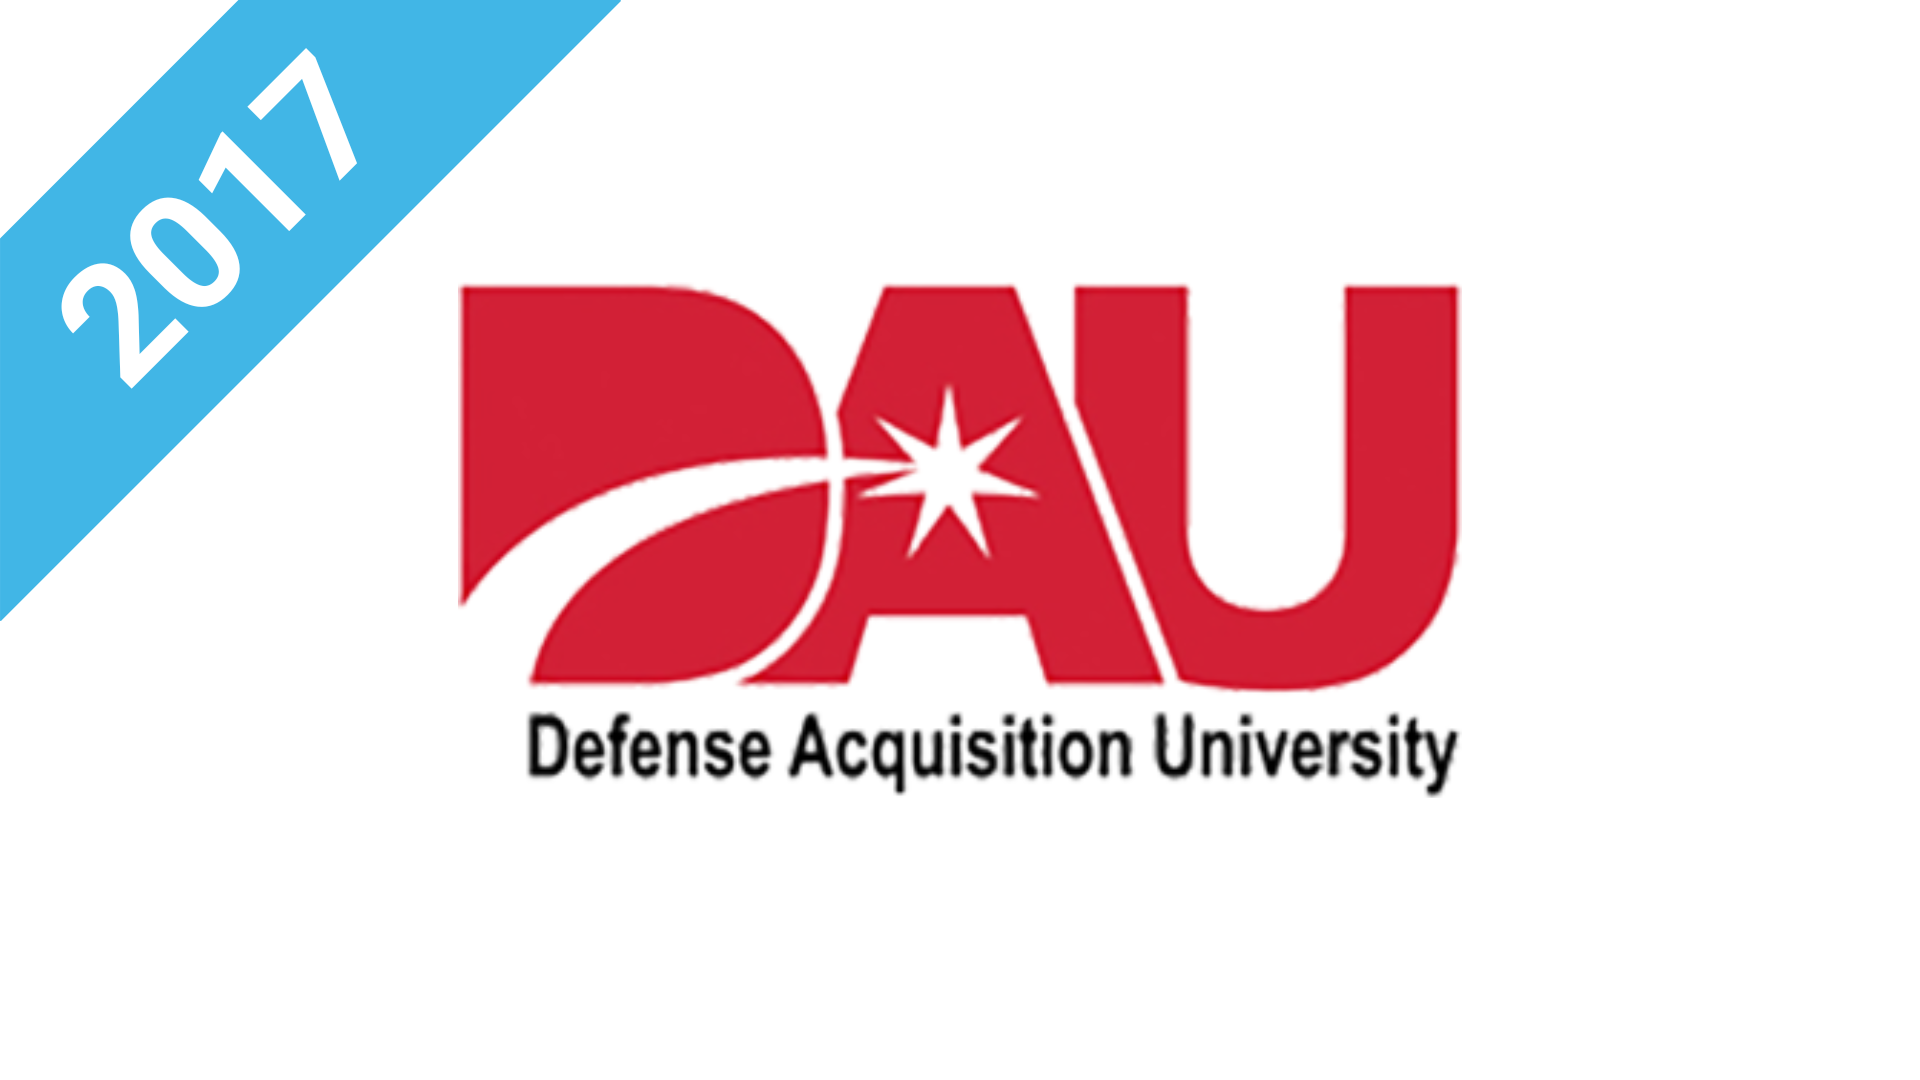 2017 - Defense Acquisition University